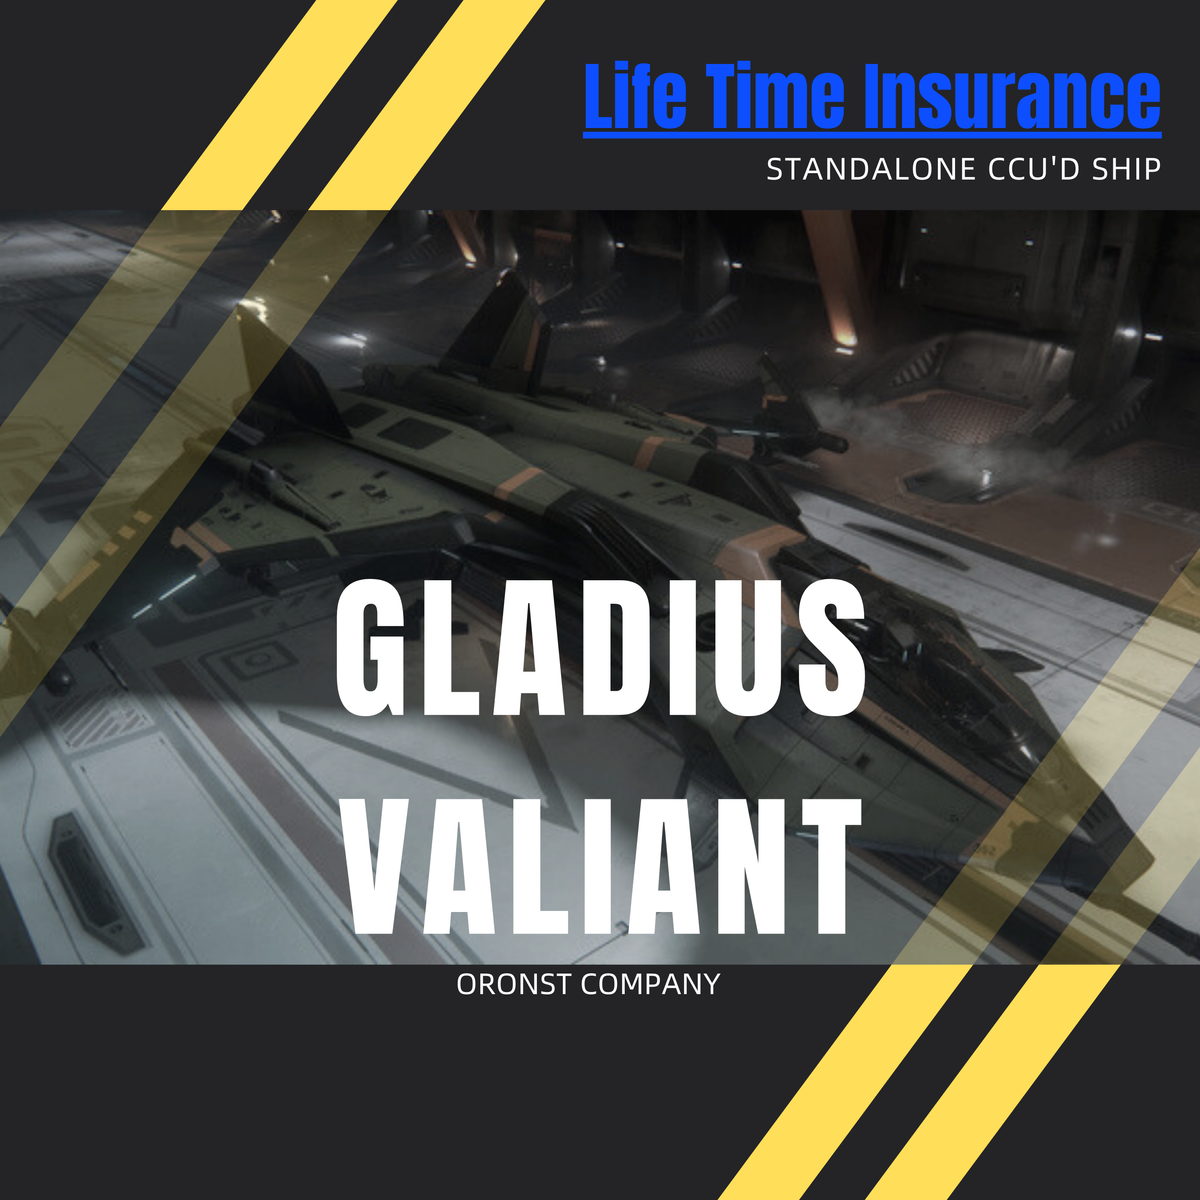 Gladius Valiant - LTI